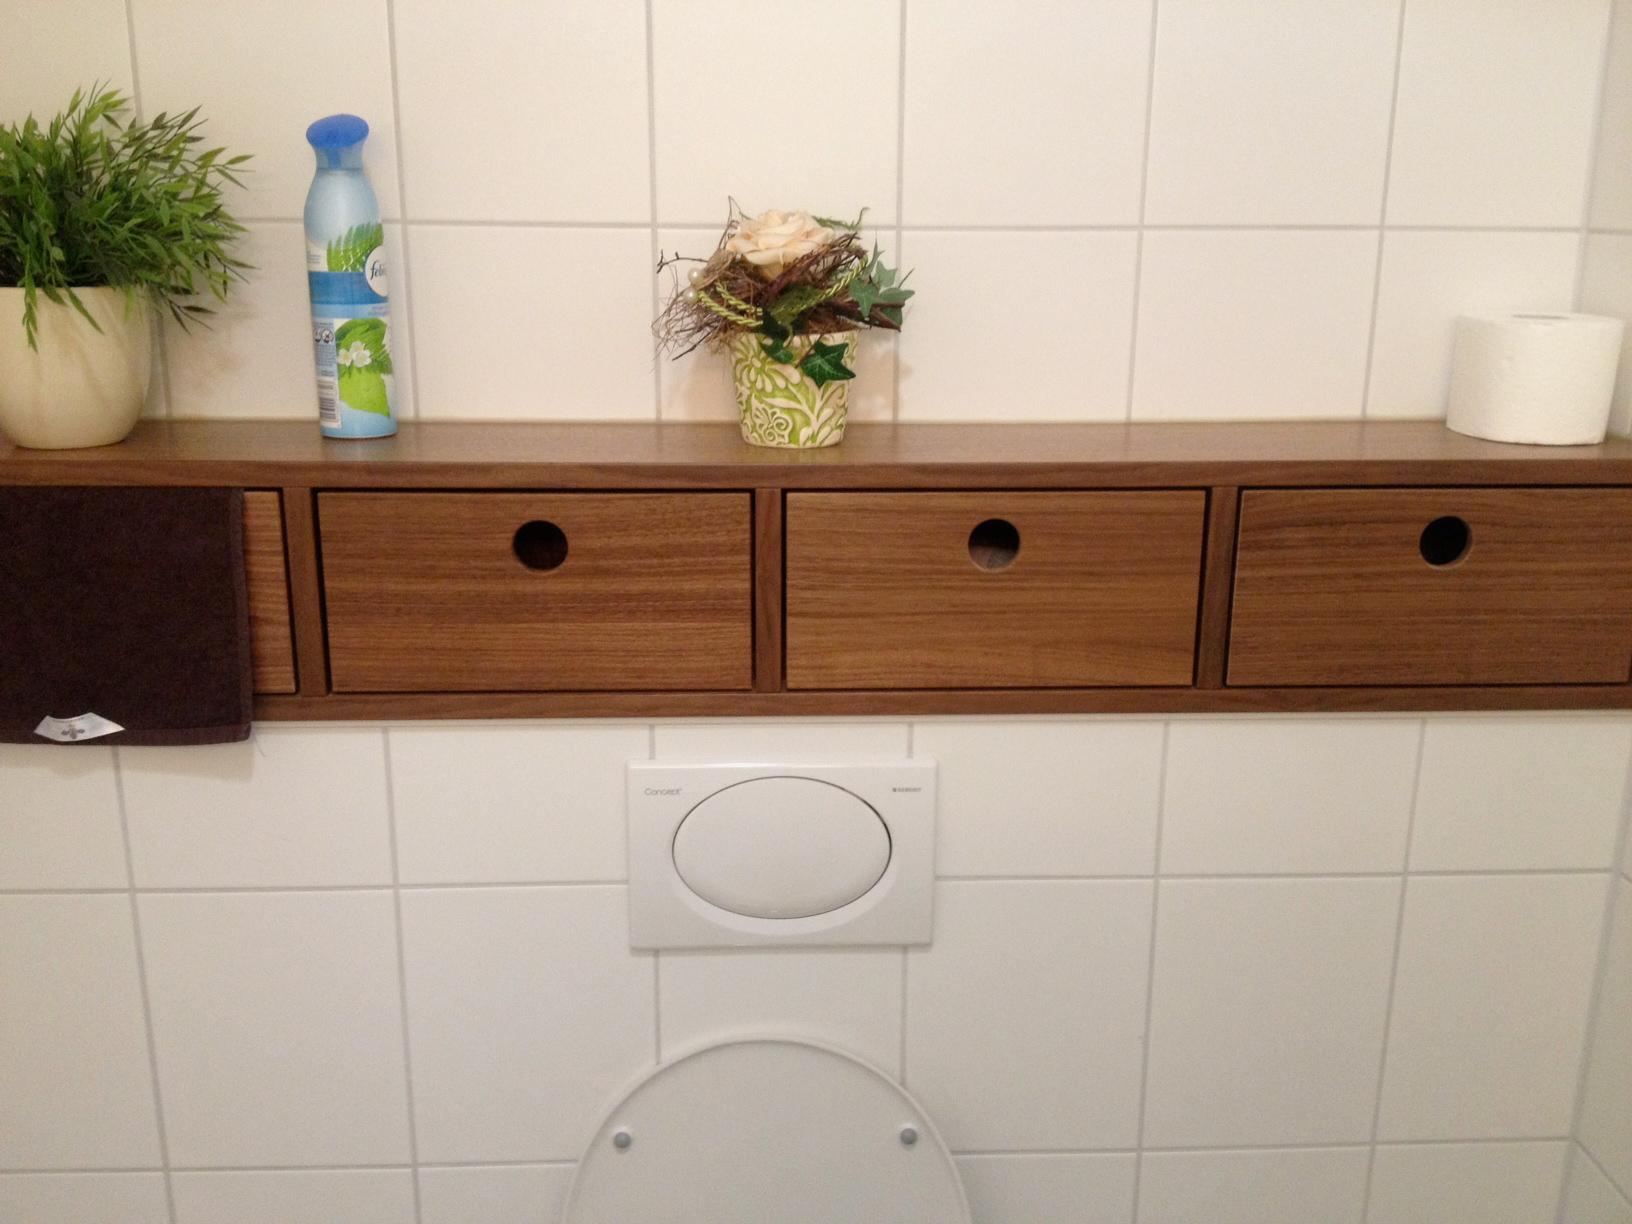 Badezimmer Ablage mit Schubkästen #aufbewahrung #badezimmerablage ©Yvonne Habermann